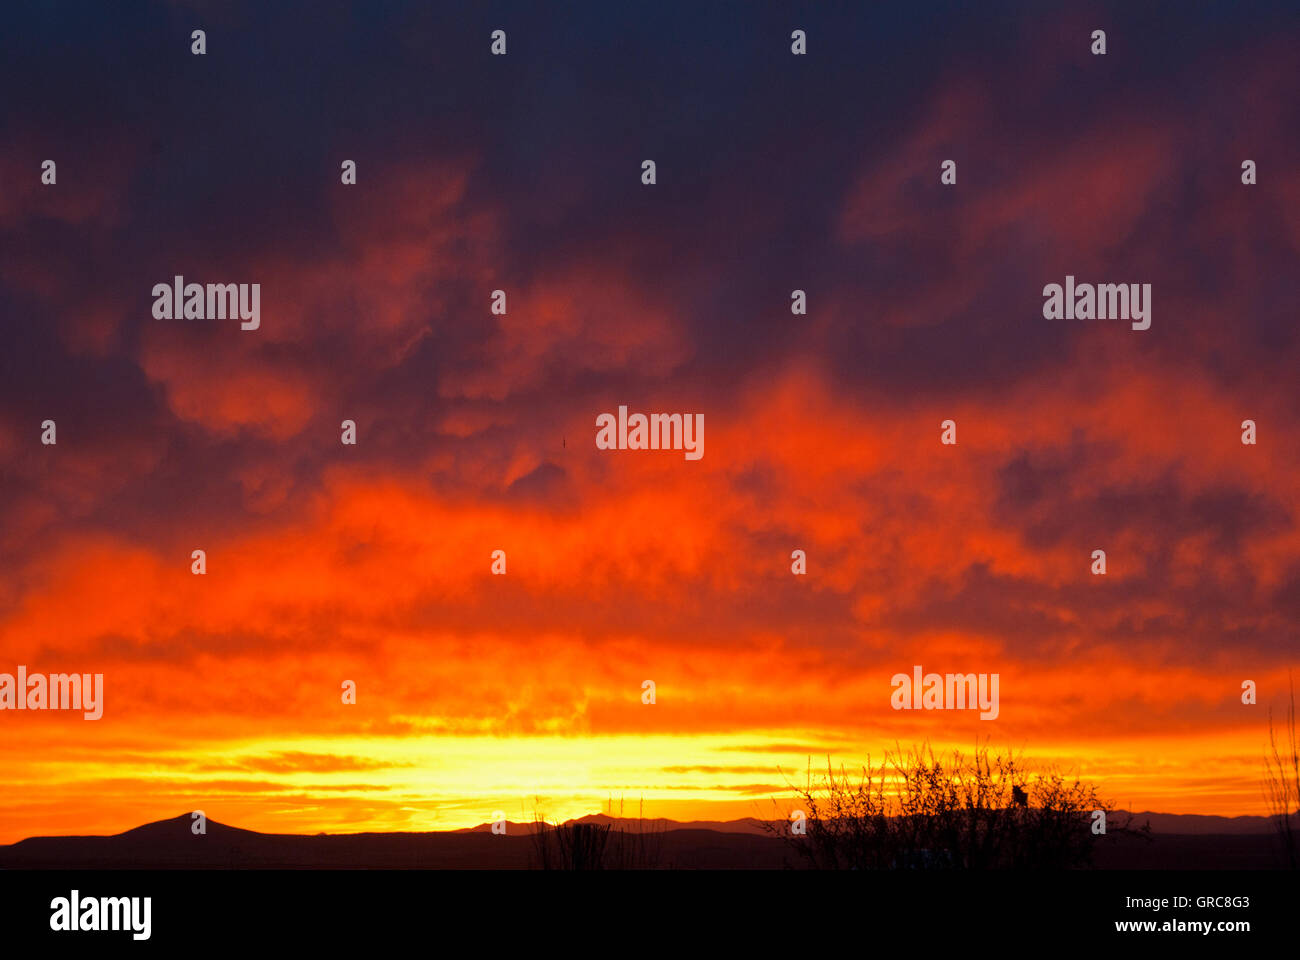 Bright red sunset over desert Stock Photo